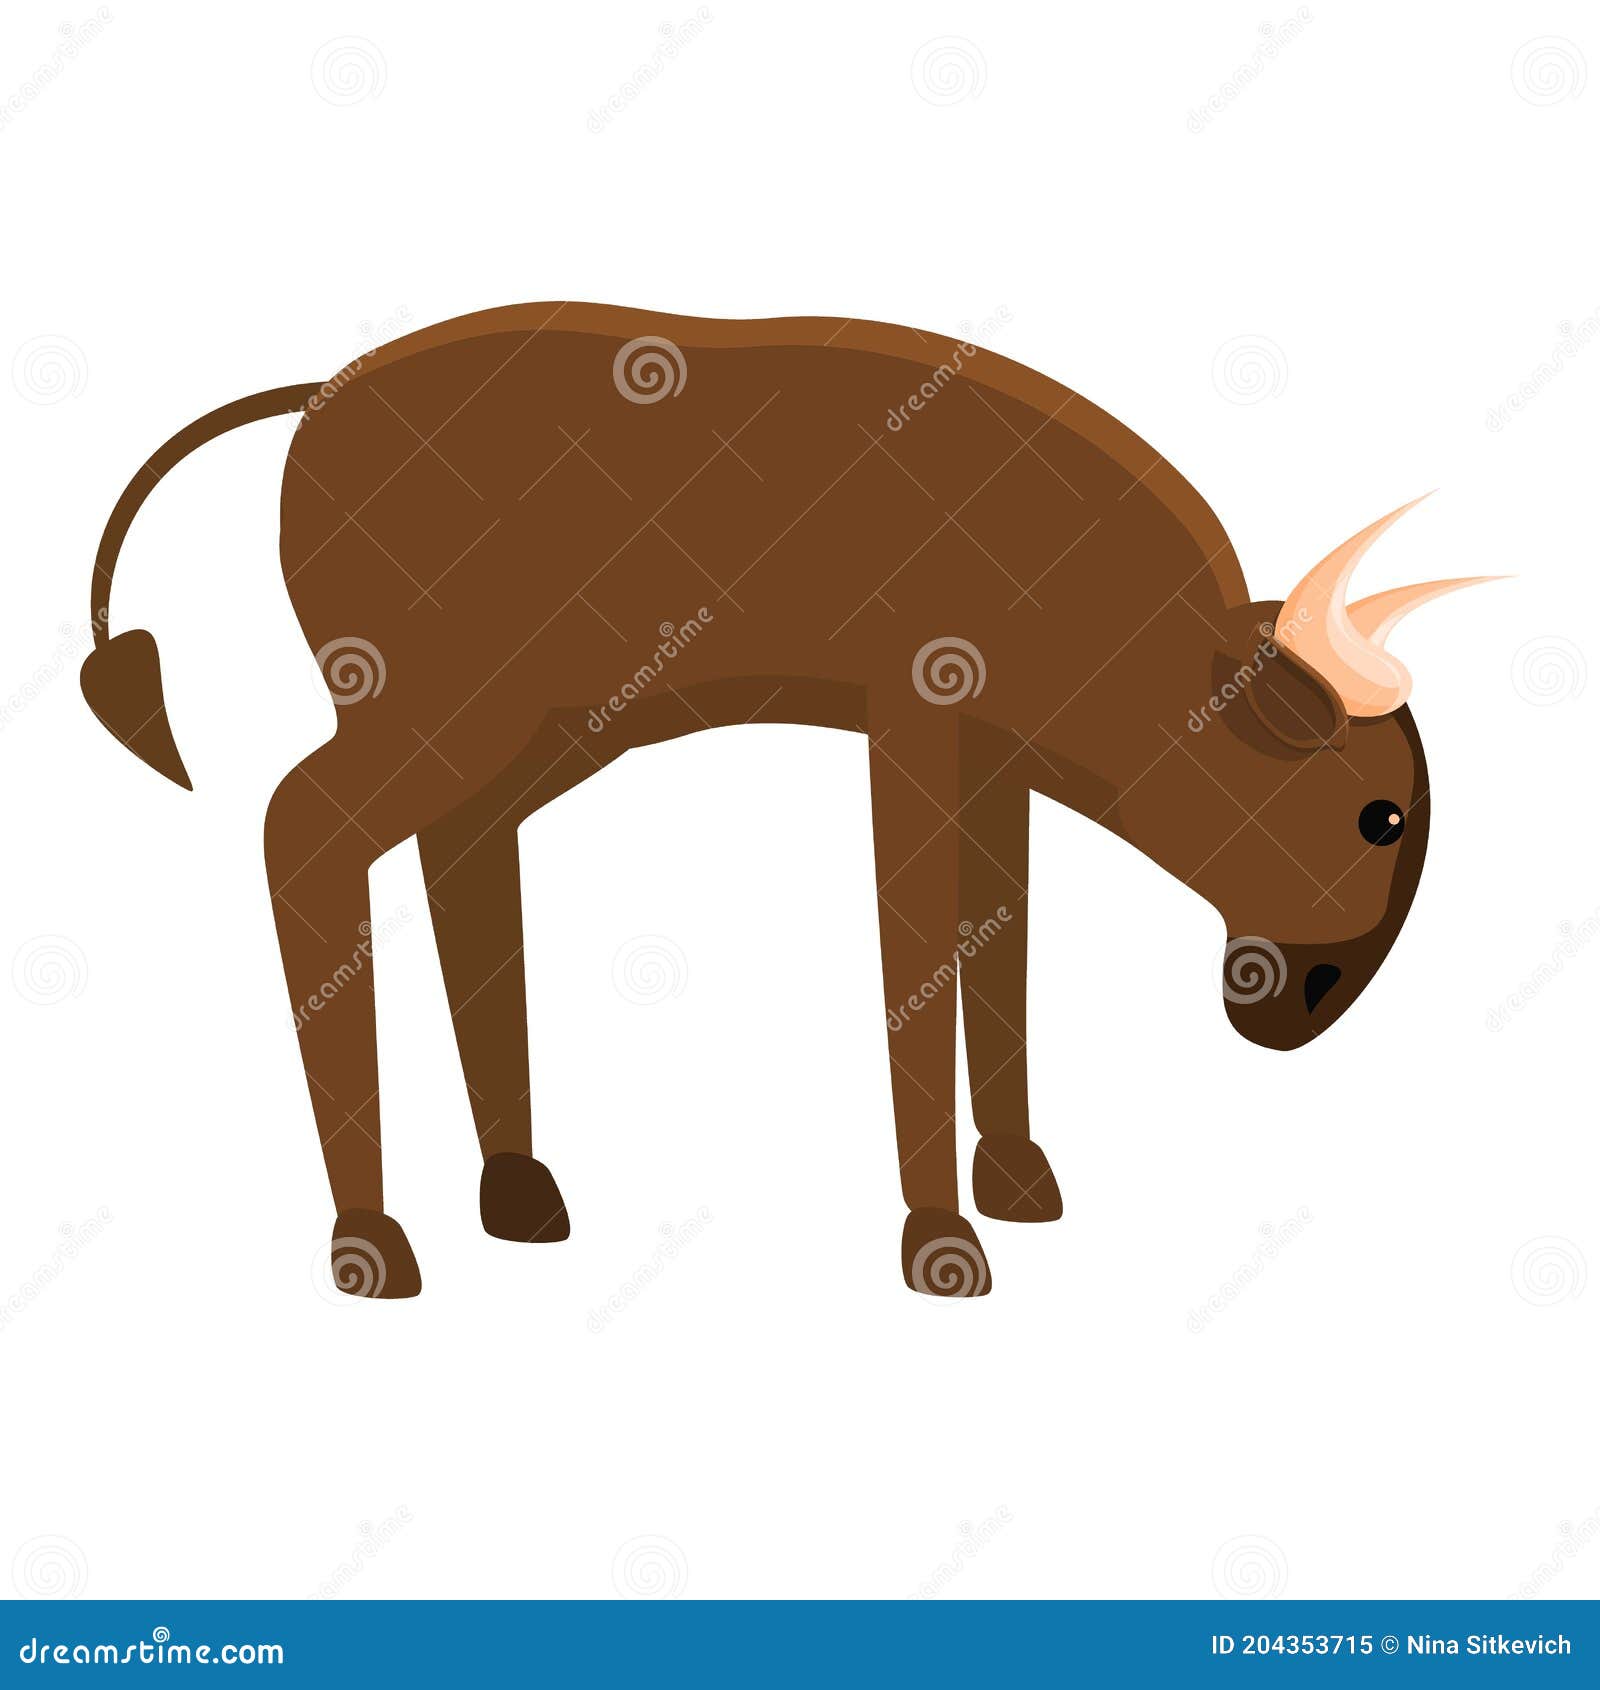 超过 8 张关于“非洲野牛”和“野牛”的免费图片 - Pixabay